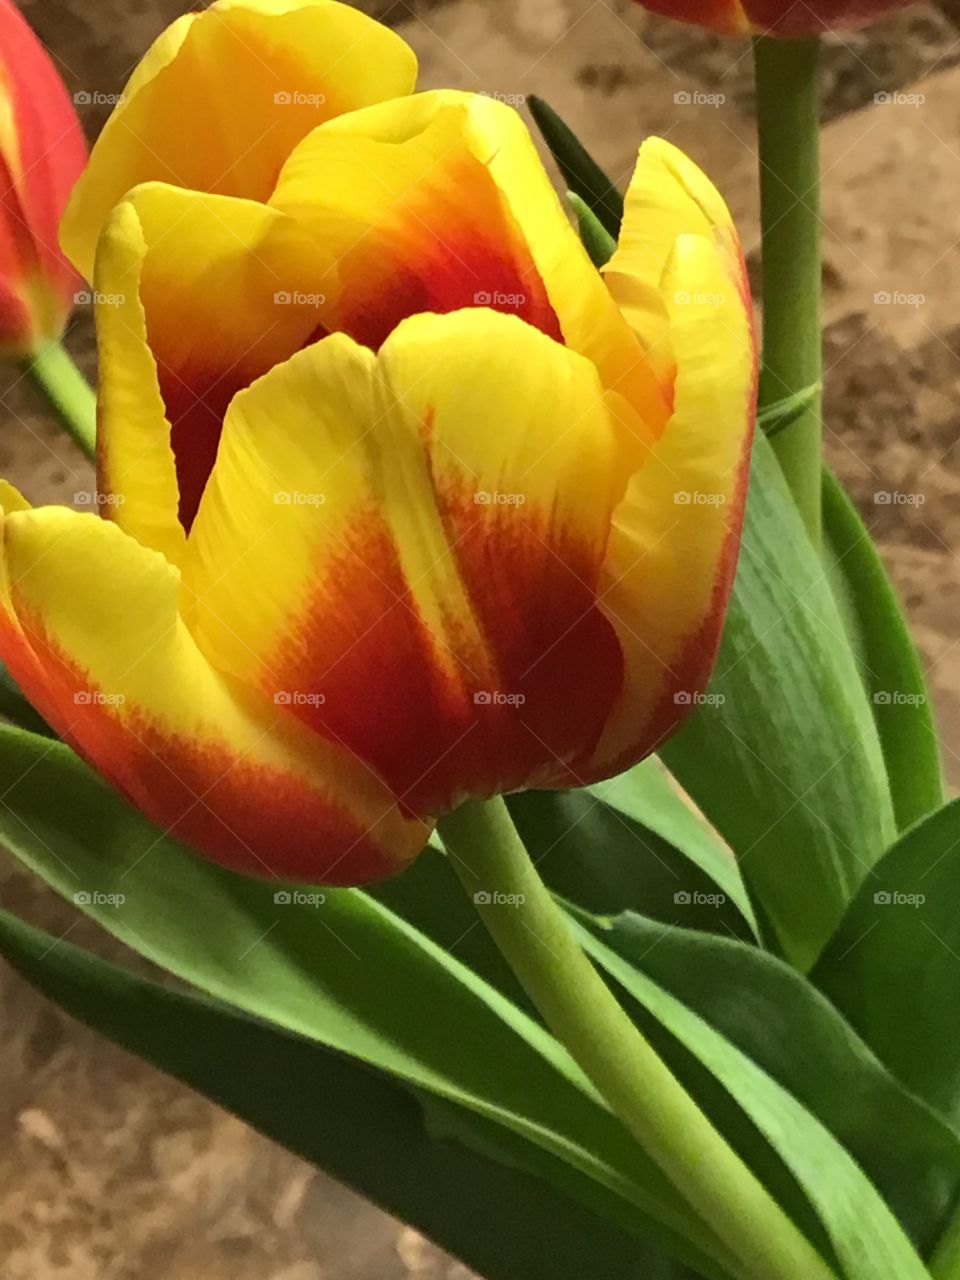 Tulip in a vase 